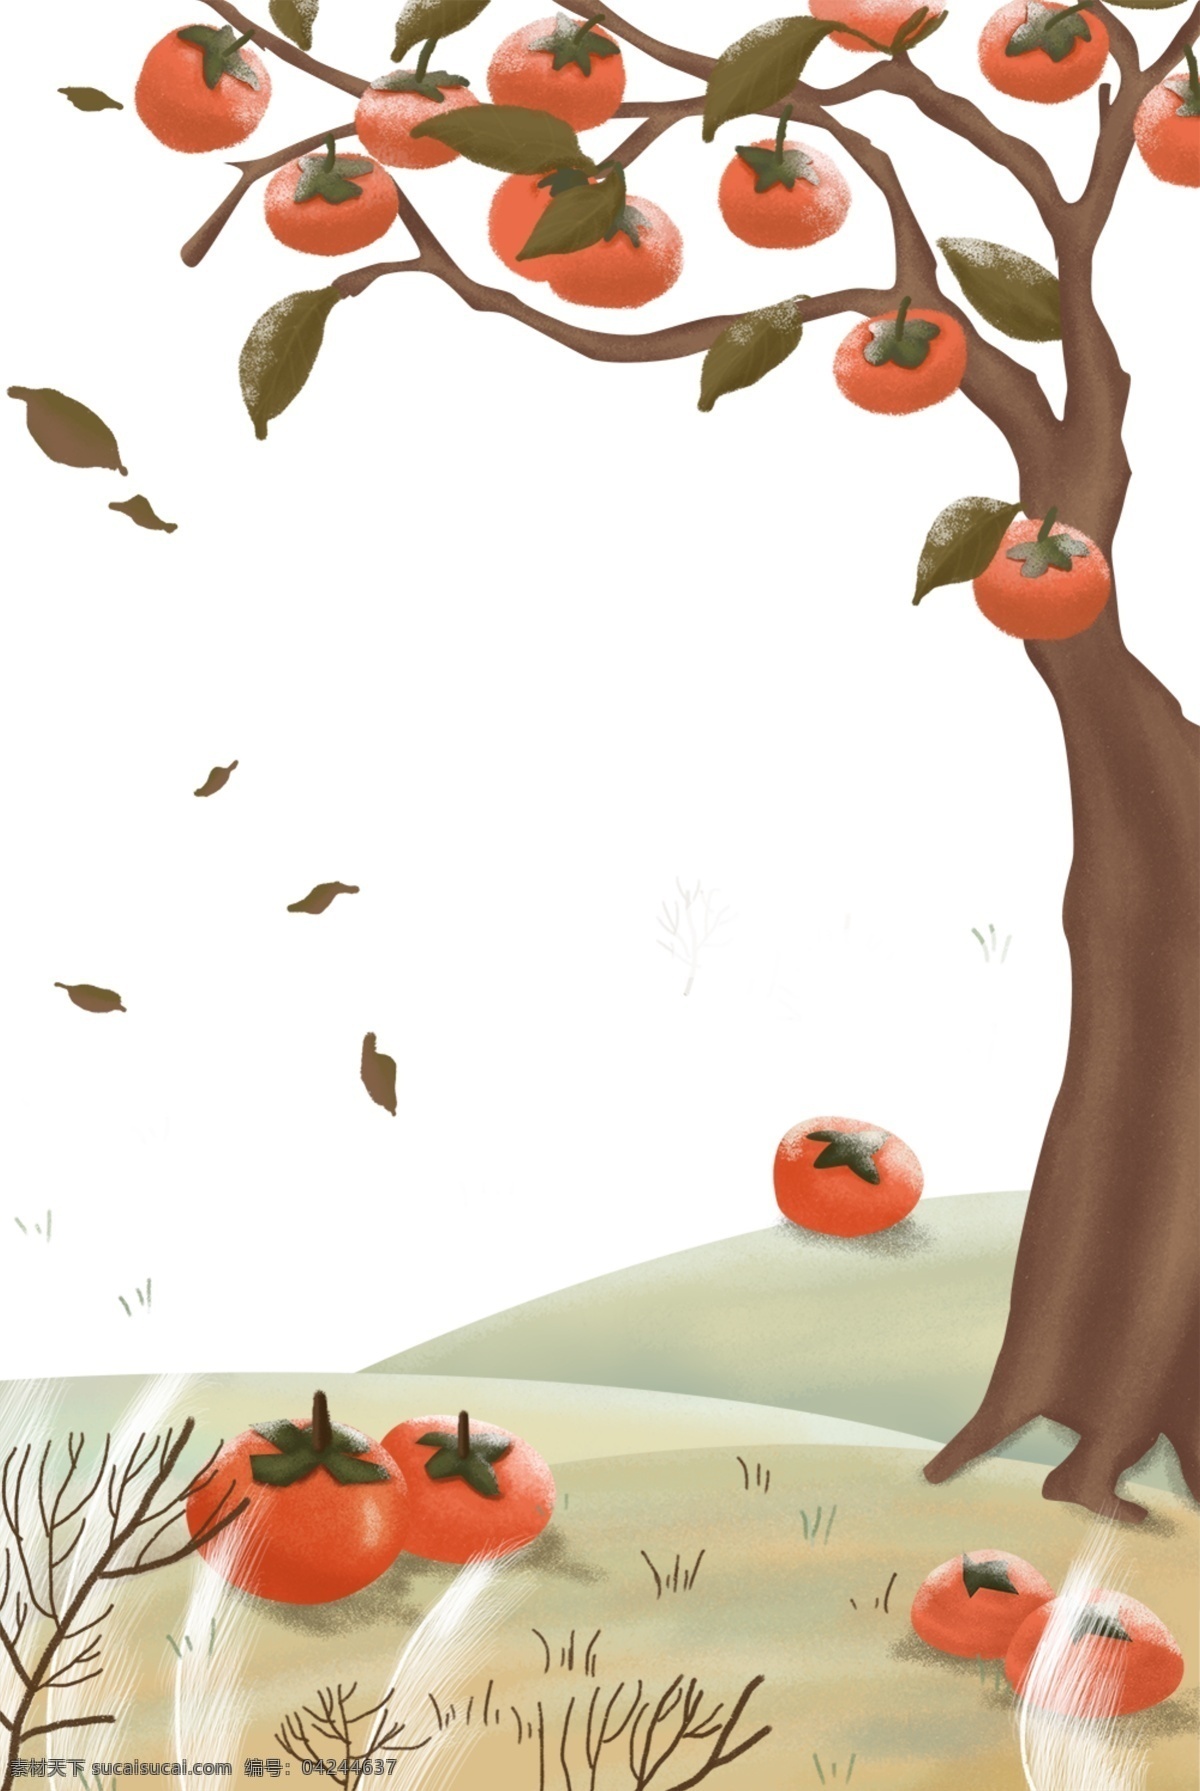 秋季 柿子 主题 边框 卡通 手绘 精美 插画 海报插画 广告插画 小清新 简约风 装饰图案 柿子主题边框